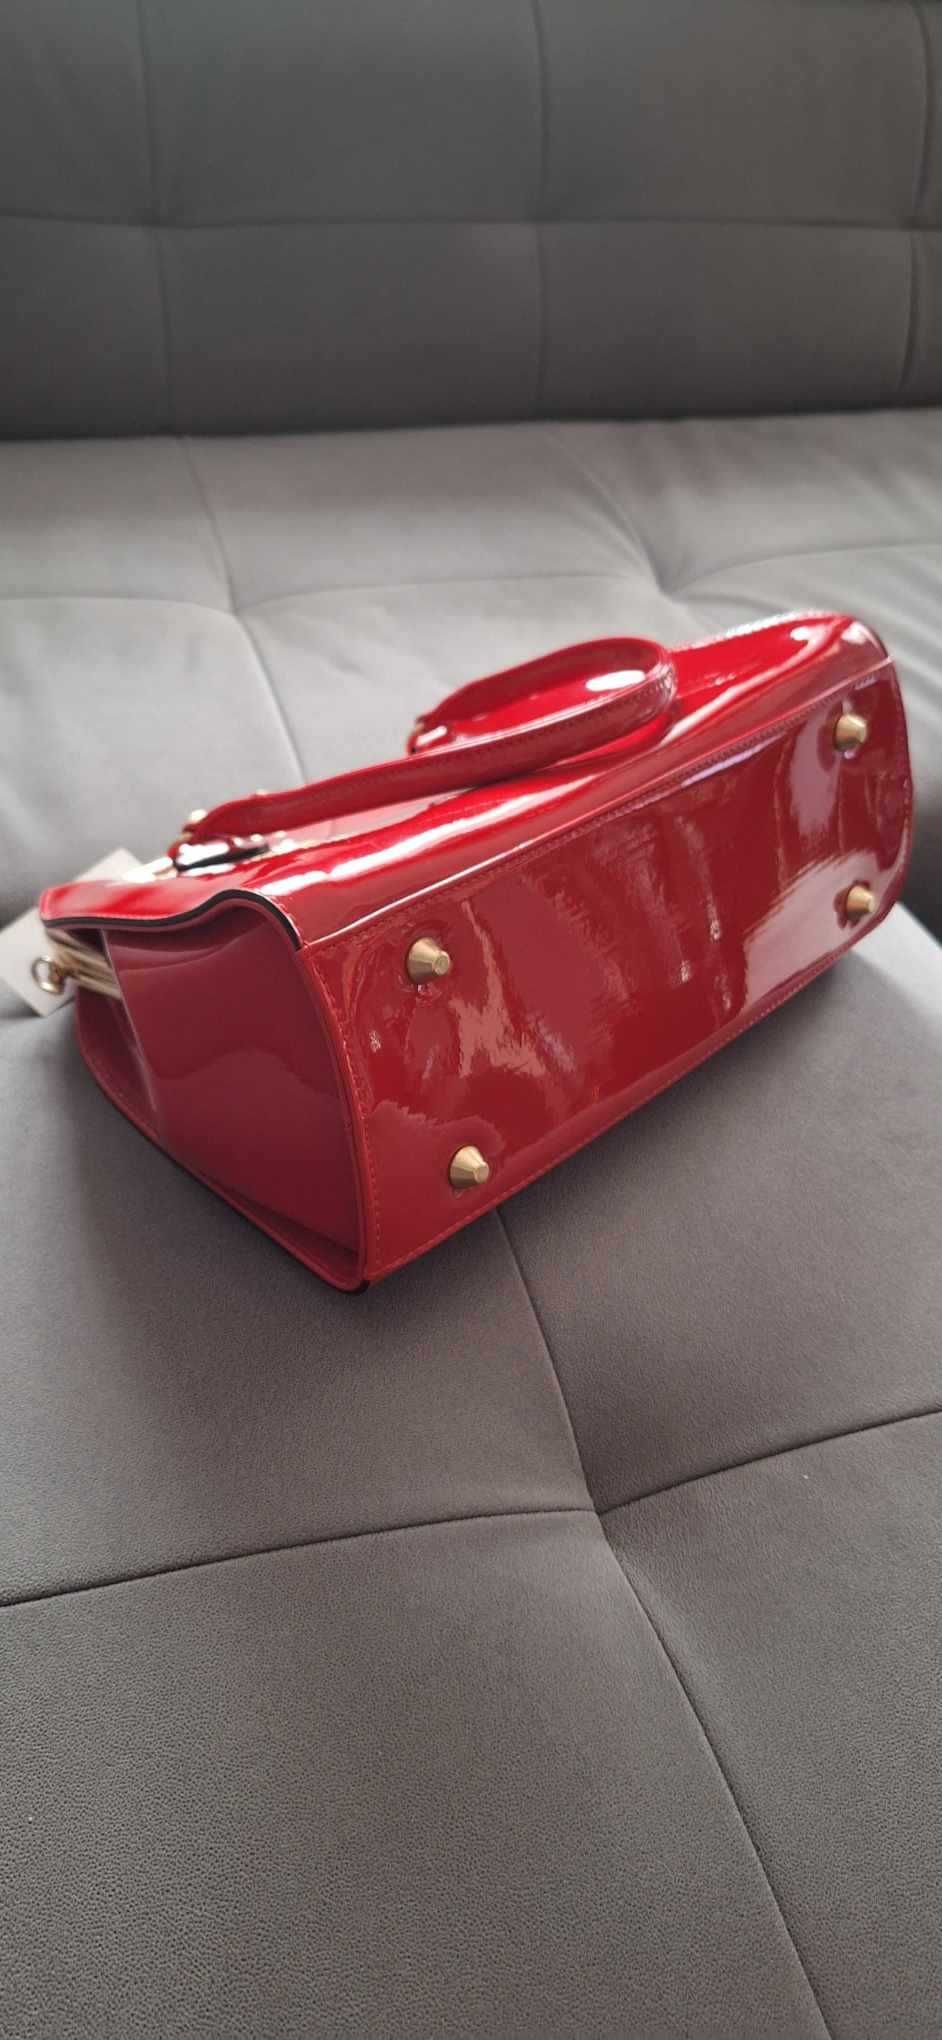 Elegancki  kuferek lakierowany soczysta bordowa czerwień,złote wstawki